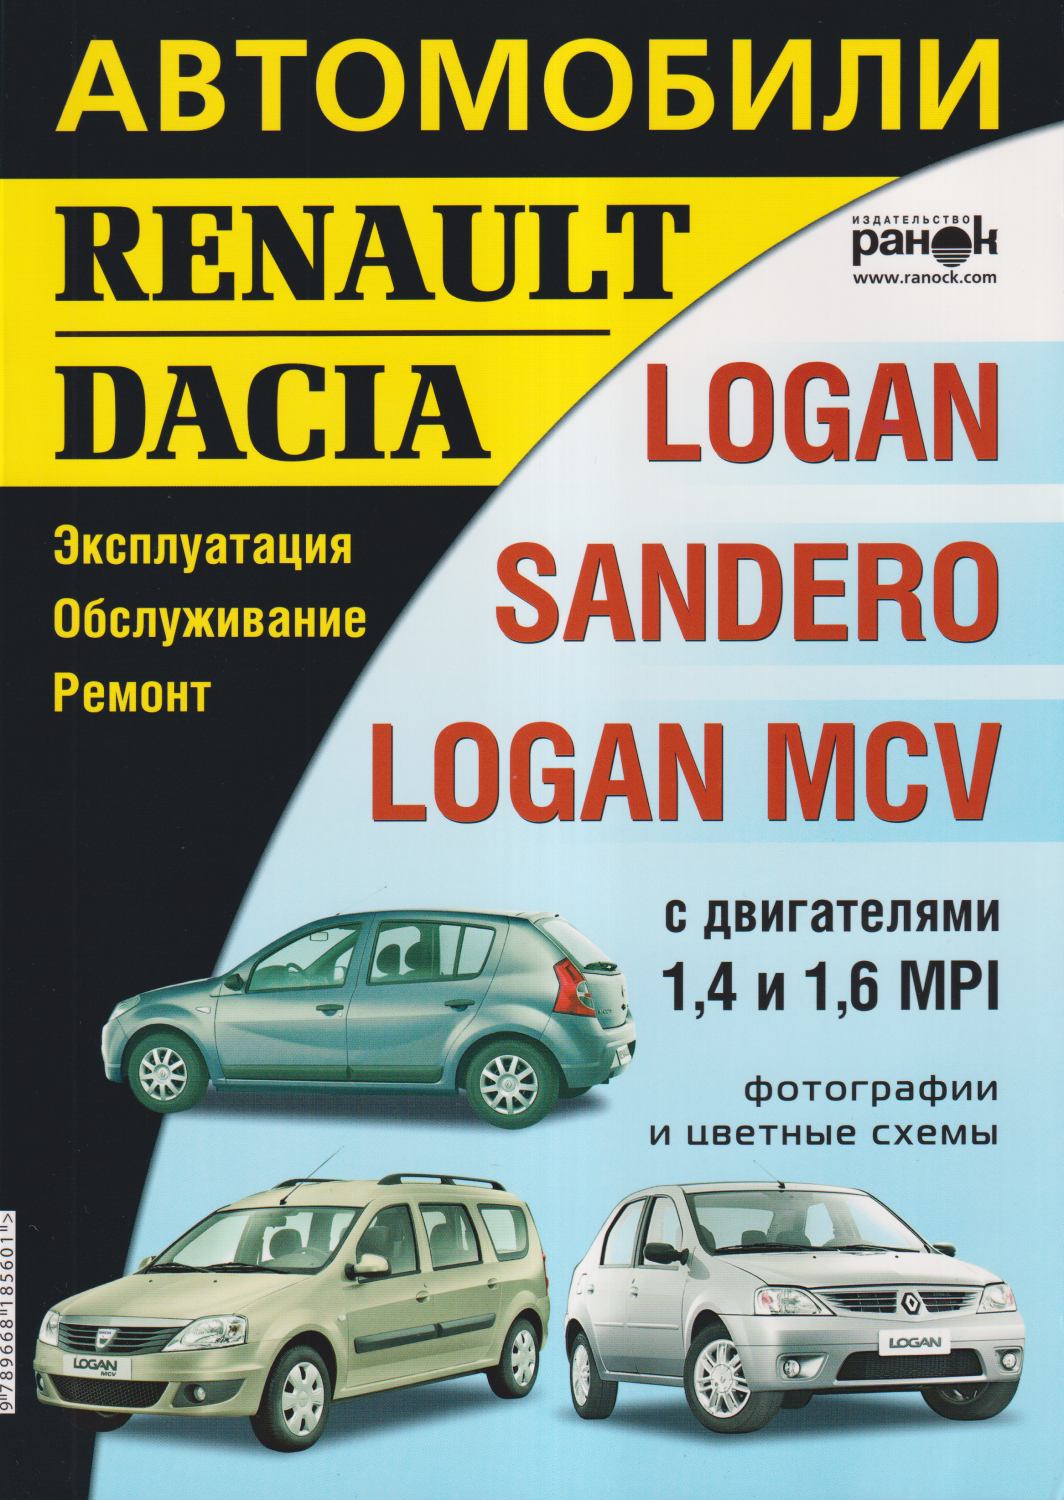 Автомобили Renault/Dacia Logan/Sandero/Logan MCV. Эксплуатация. Обслуживание. Ремонт.